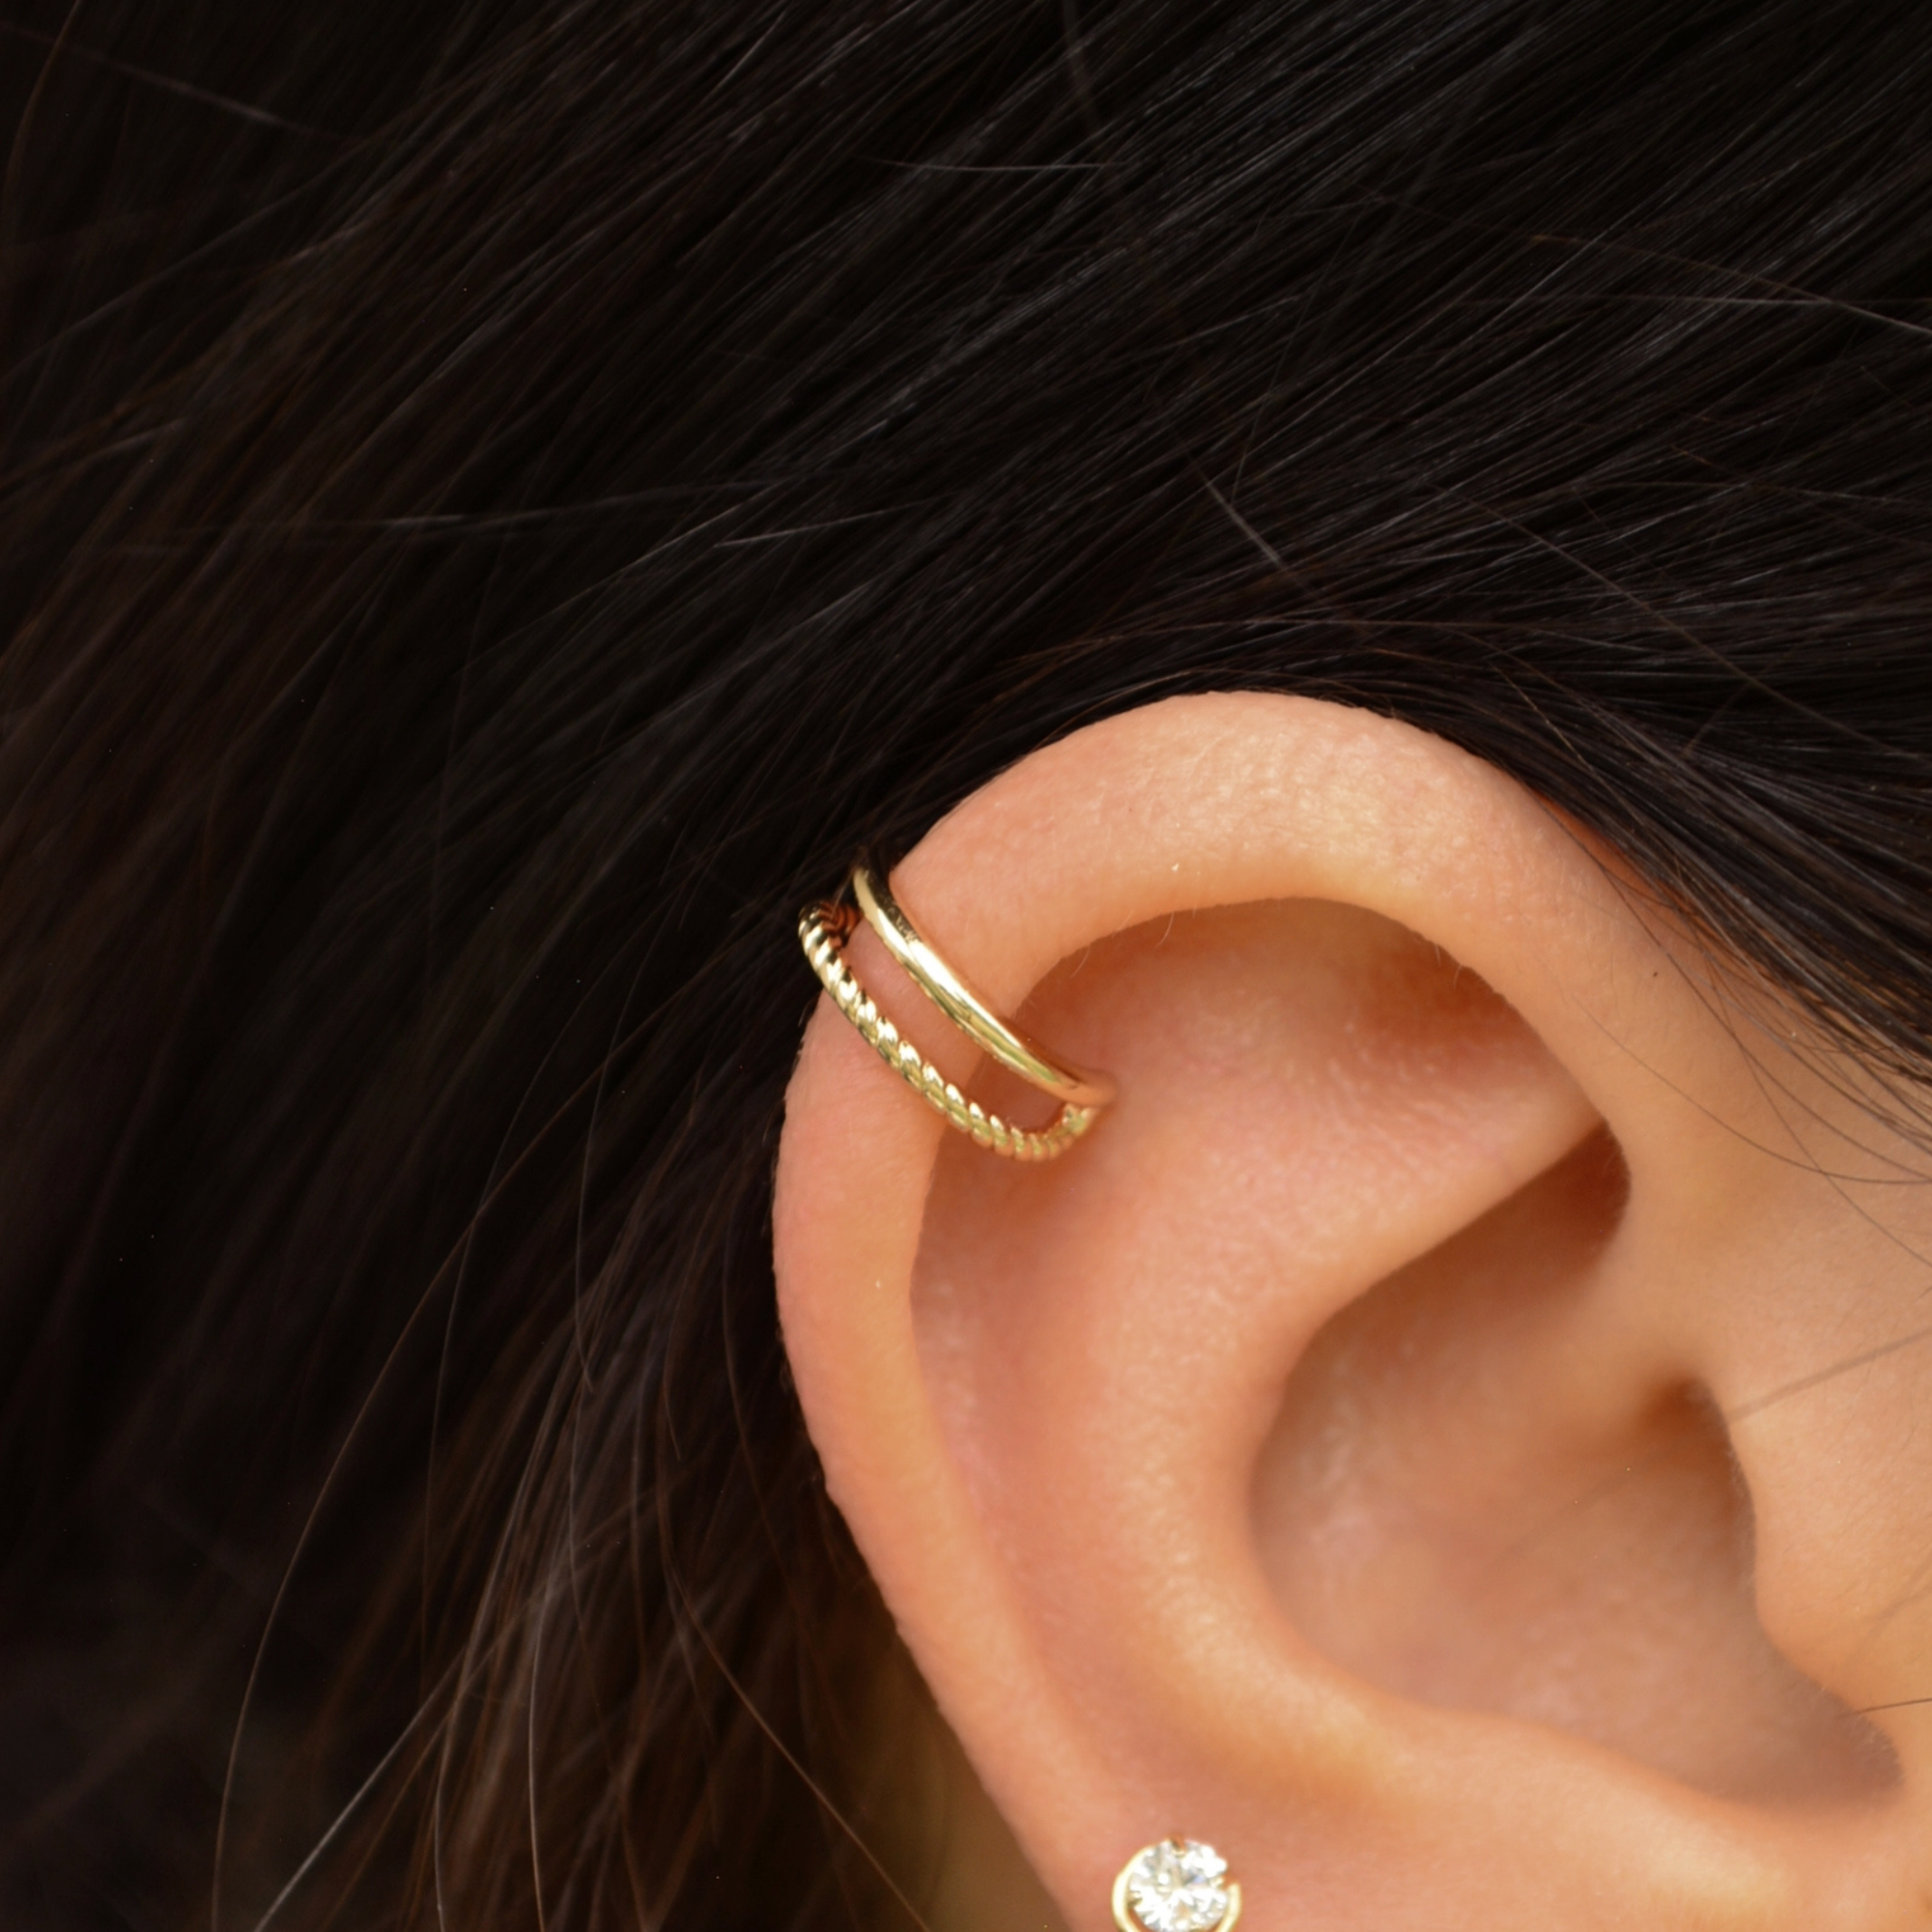 Ear cuff earrings